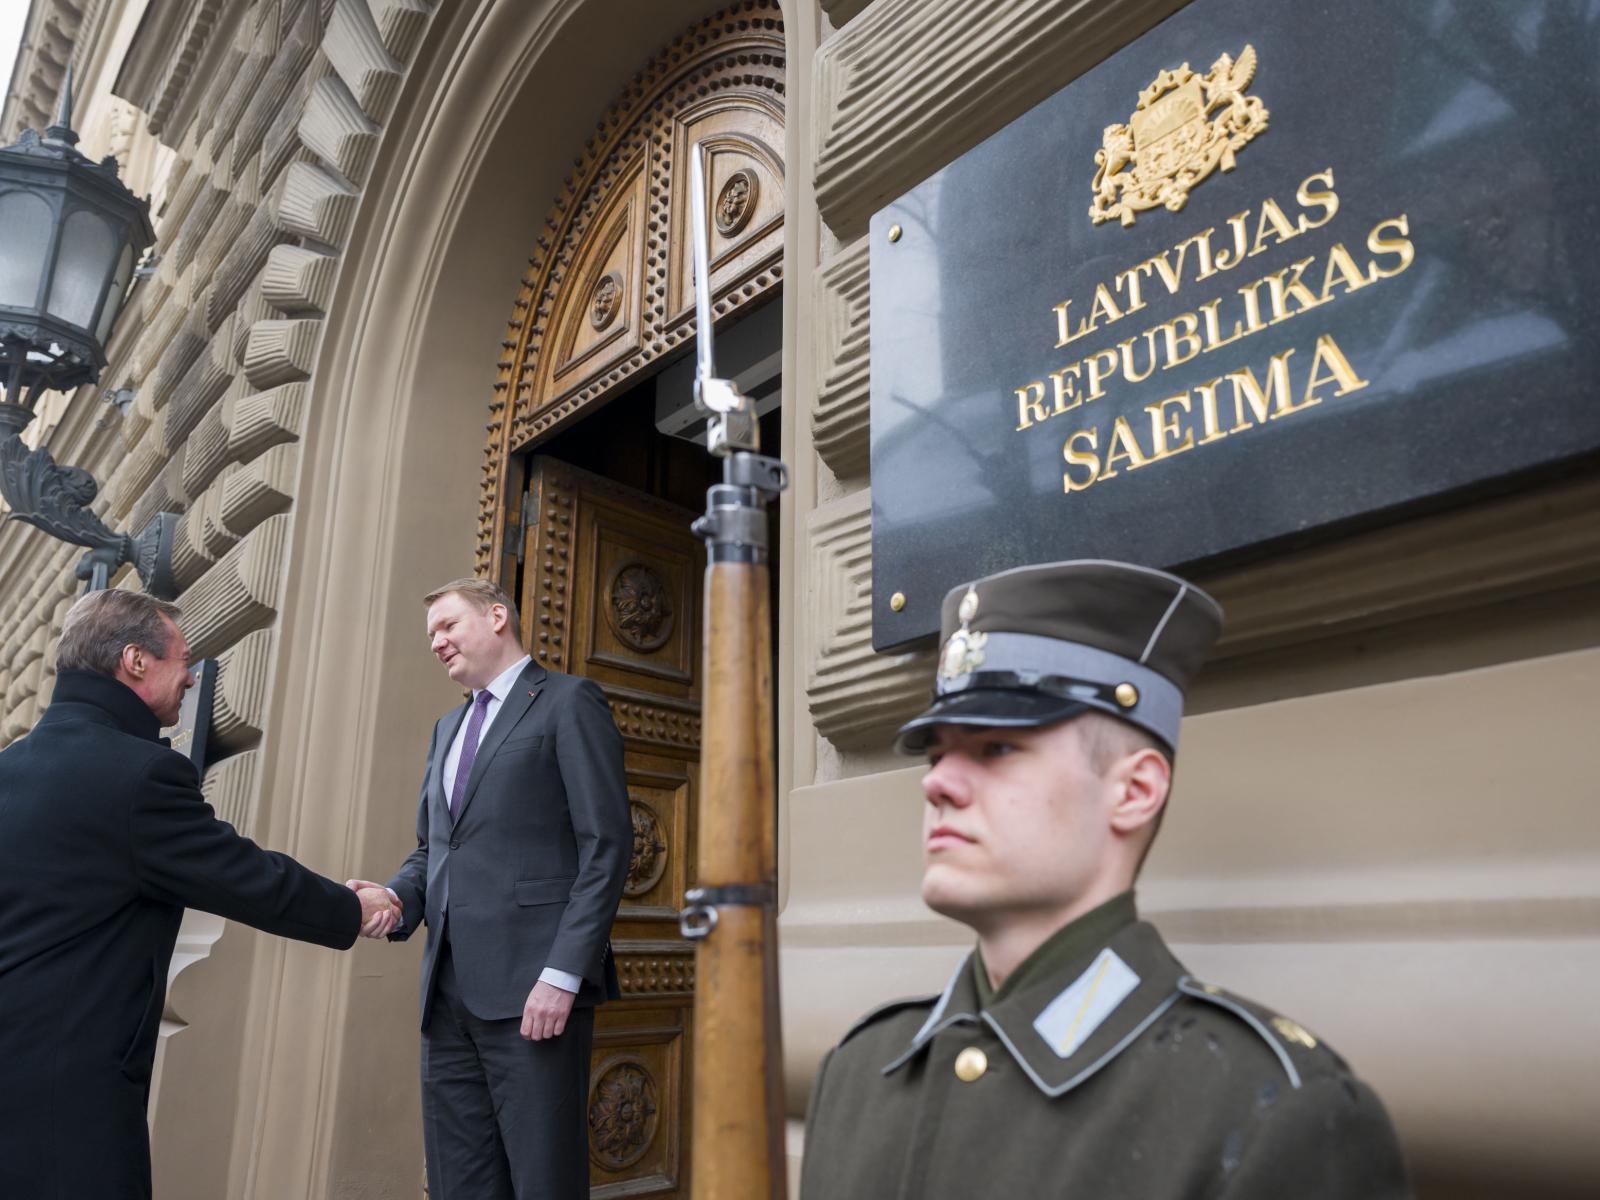 Le Grand-Duc accueilli par le Président de la Saeima